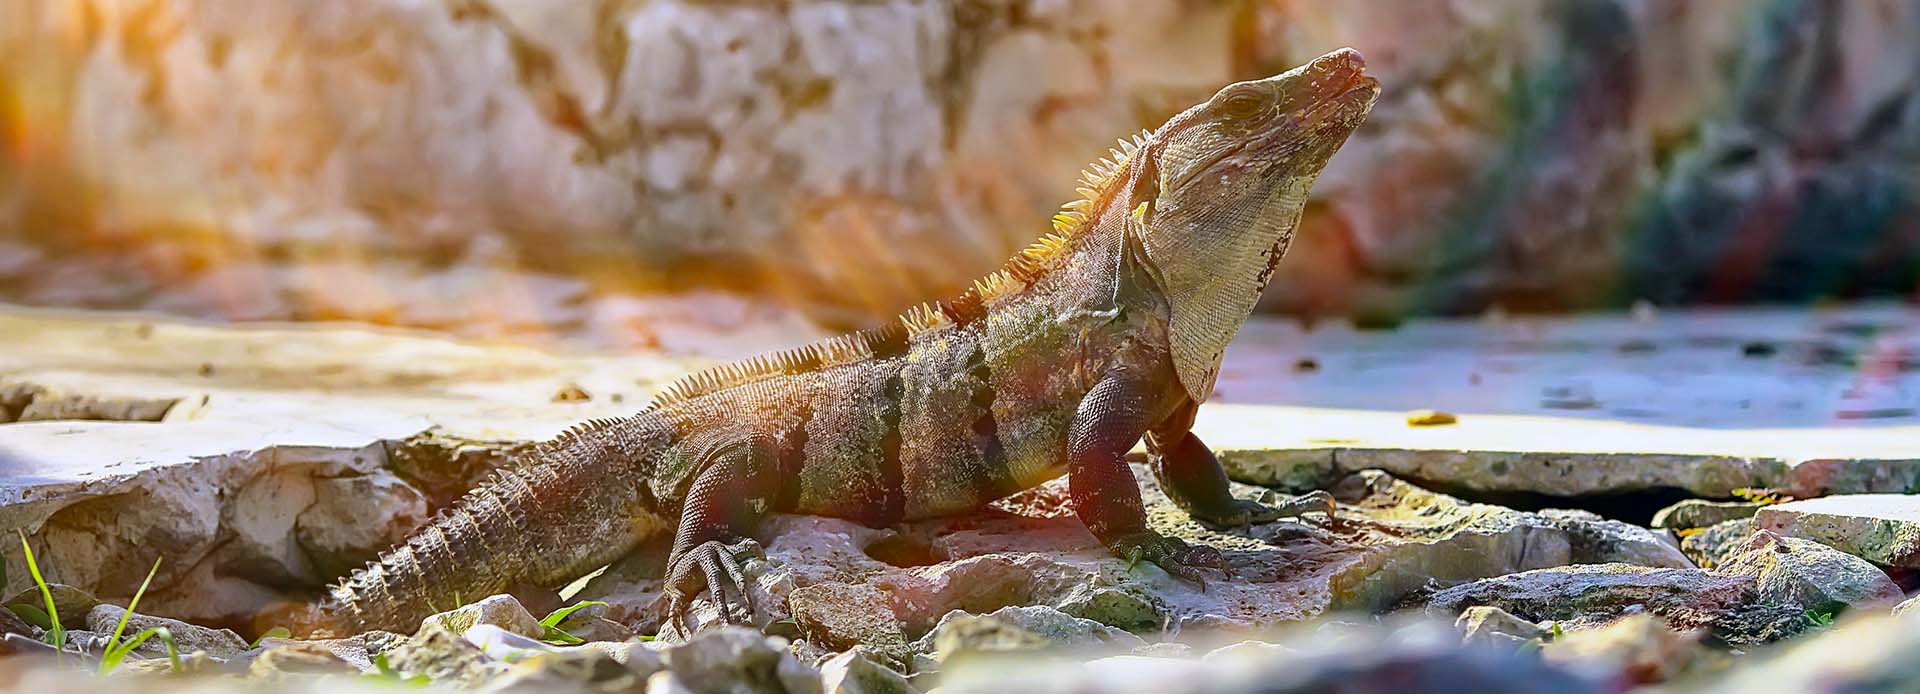 Salvemos a la iguana negra de la extinción